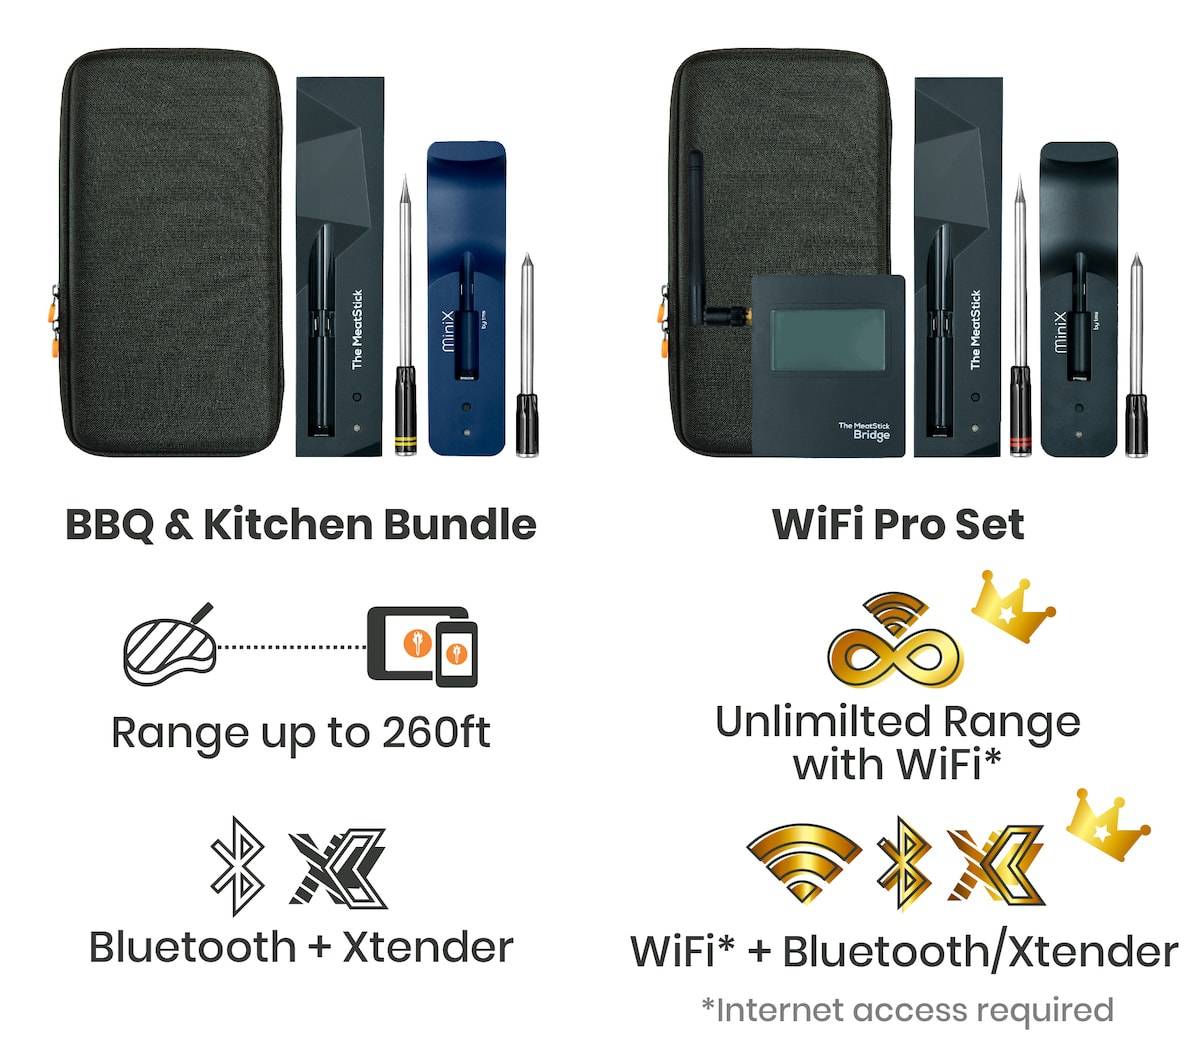 BBQ & Kitchen Bundle vs. WiFi Pro Set